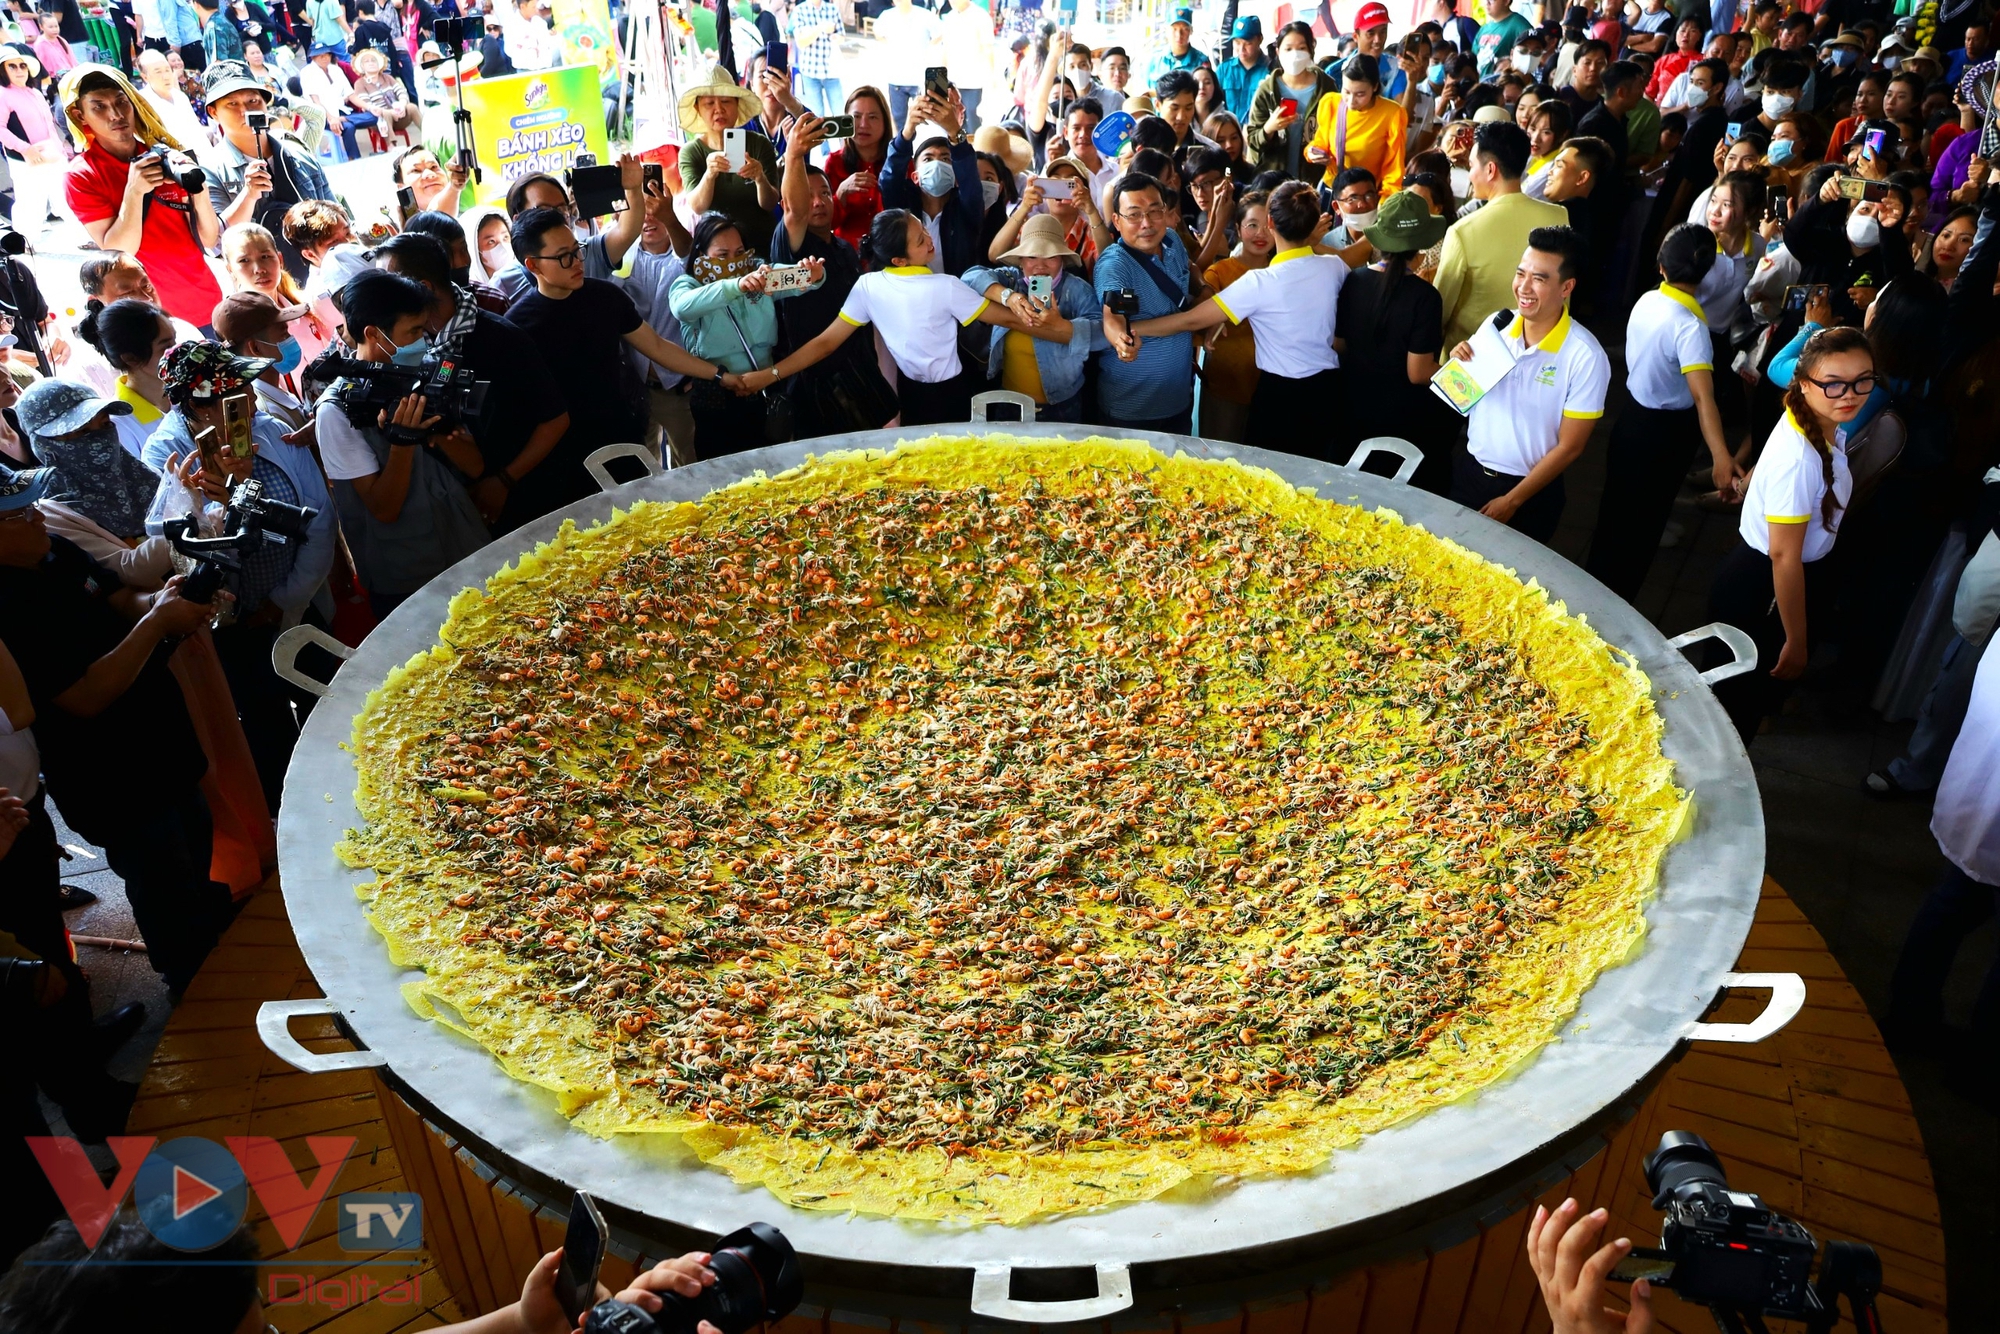 Cần Thơ: 15 nghệ nhân trình diễn đổ bánh xèo 'siêu to khổng lồ' đường kính 3m- Ảnh 1.